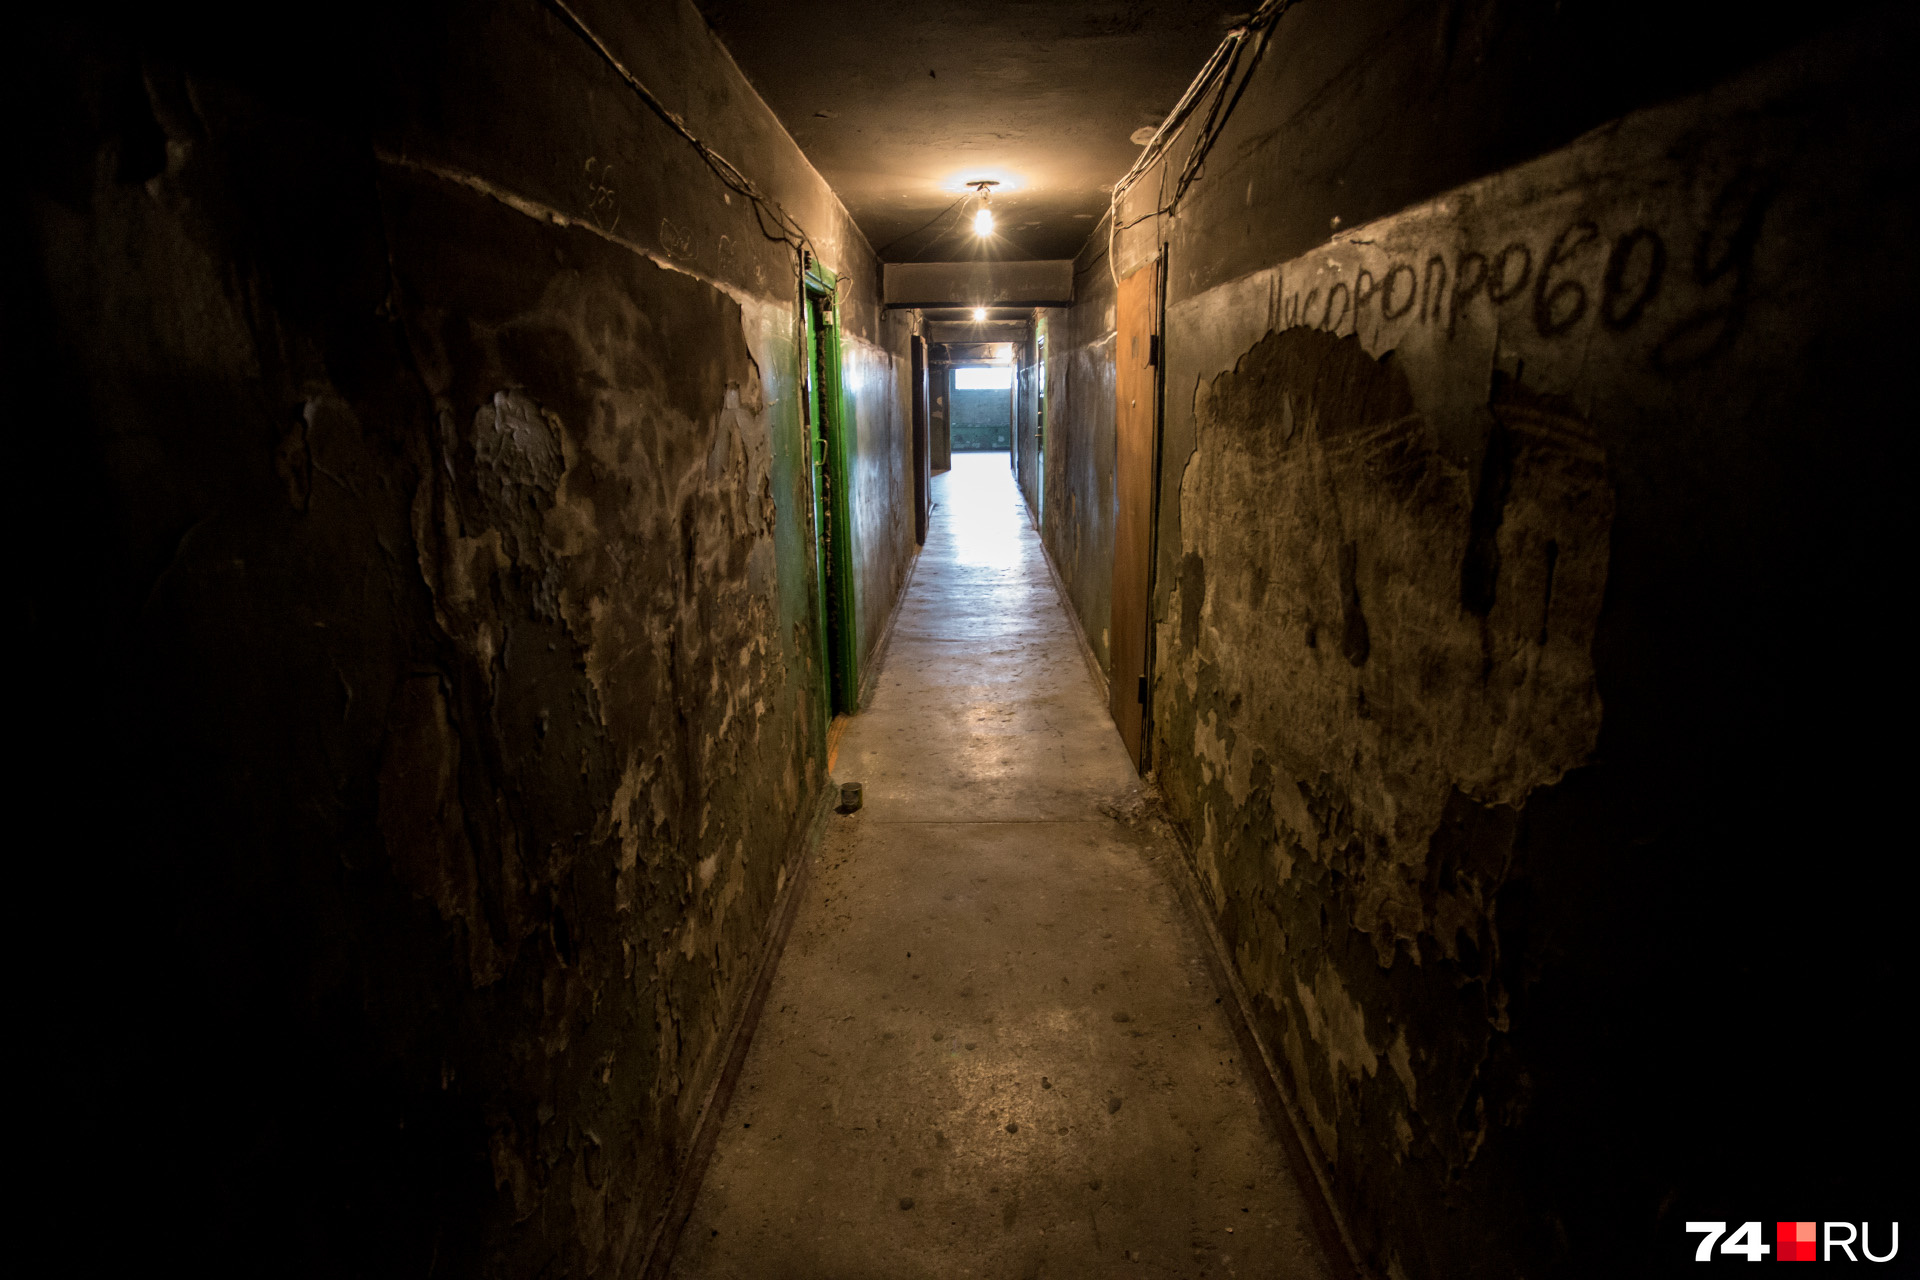 Освещение в общежитии есть далеко не везде, и в длинных коридорах совсем не чувствуешь себя в безопасности